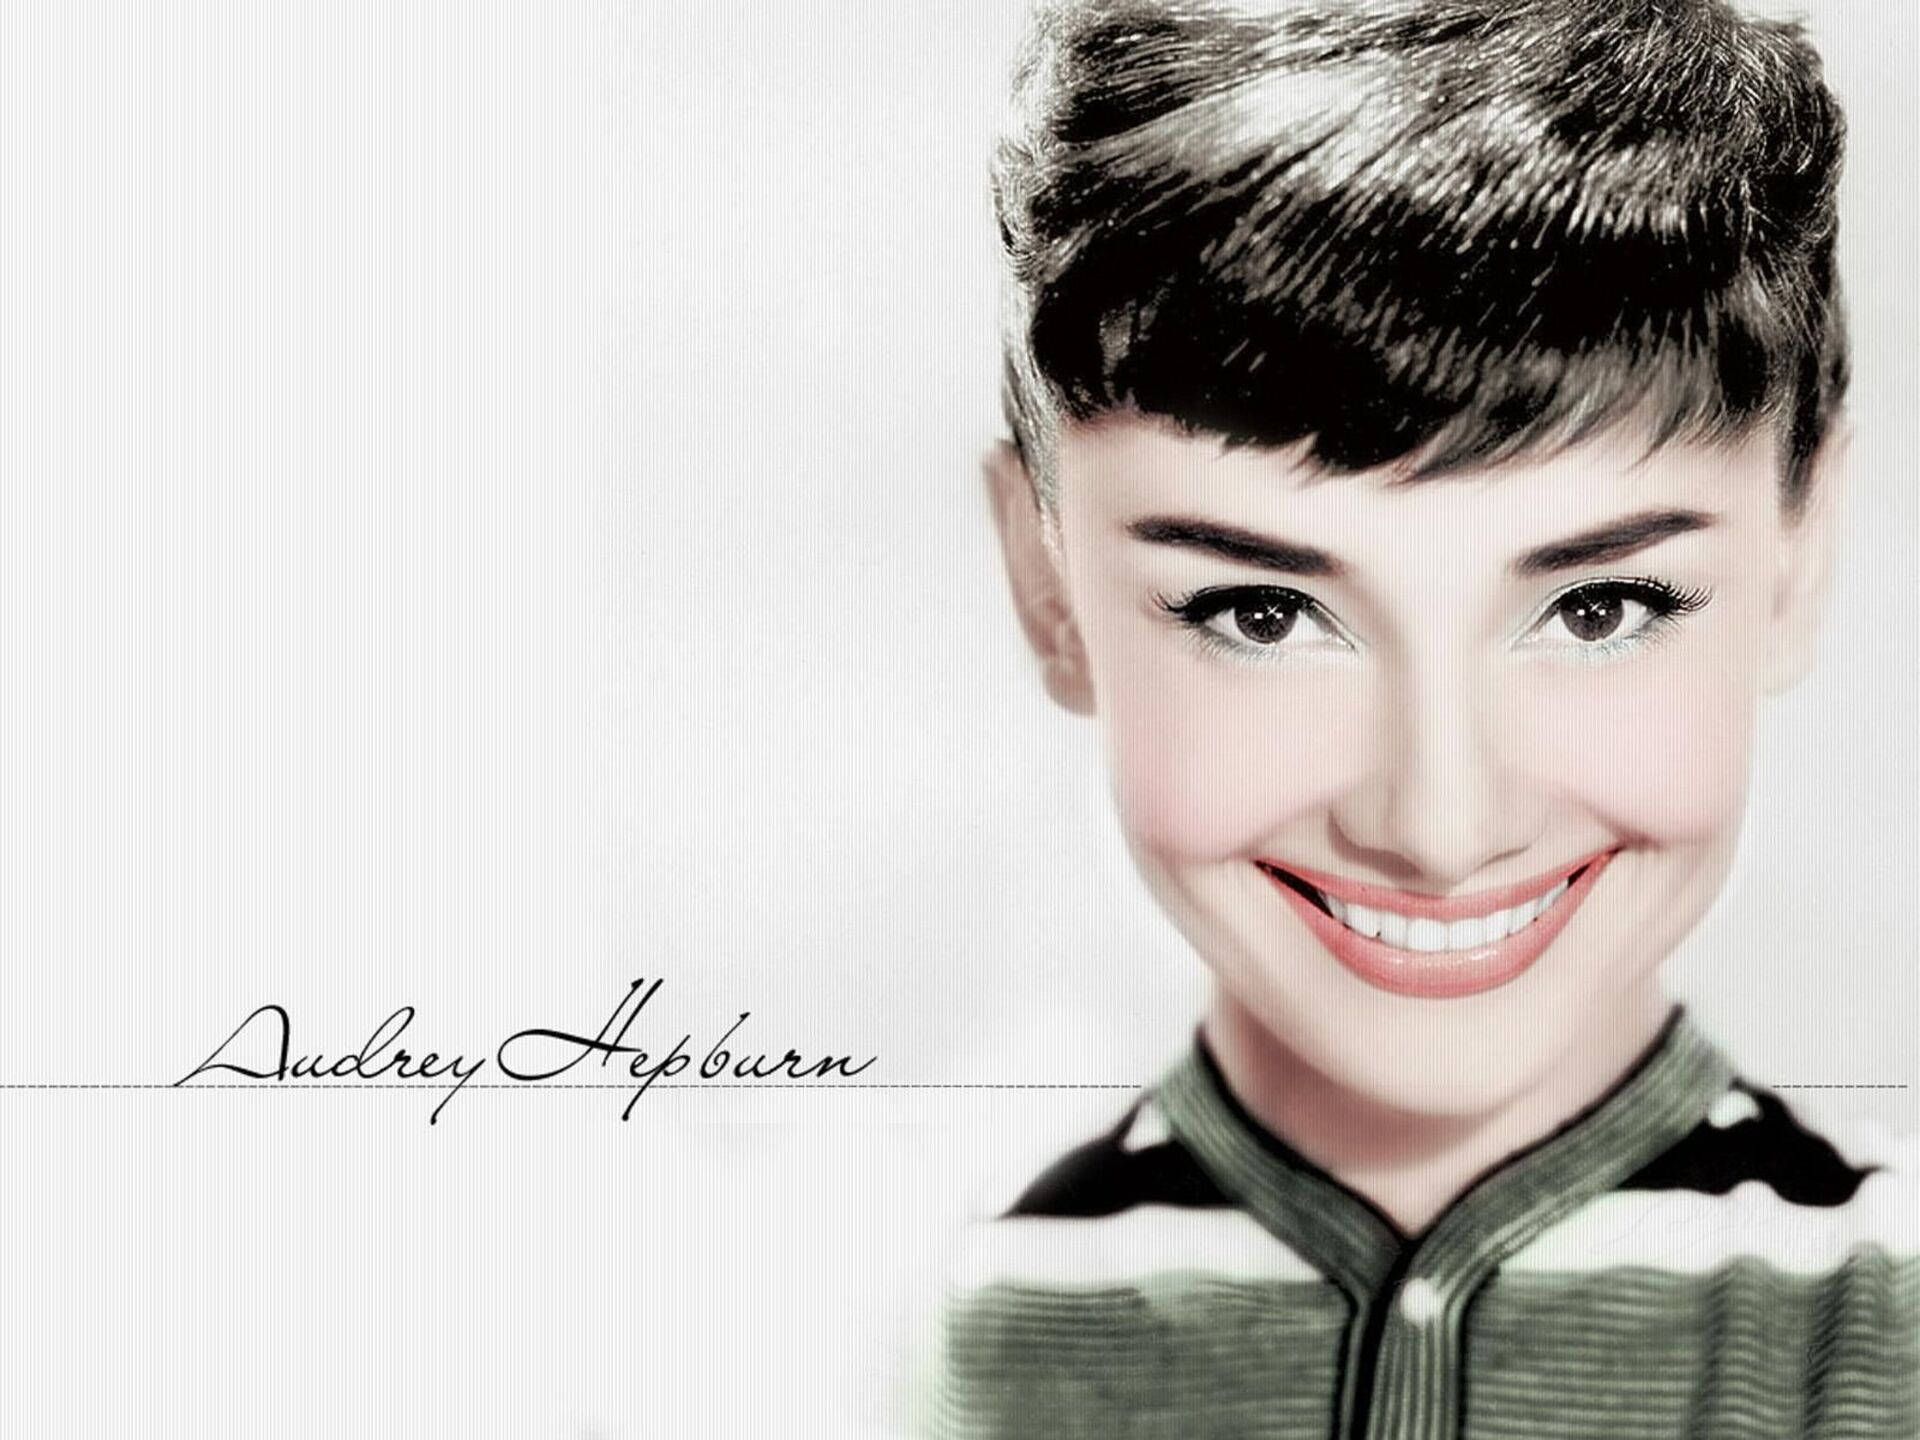 Smiling Audrey Hepburn